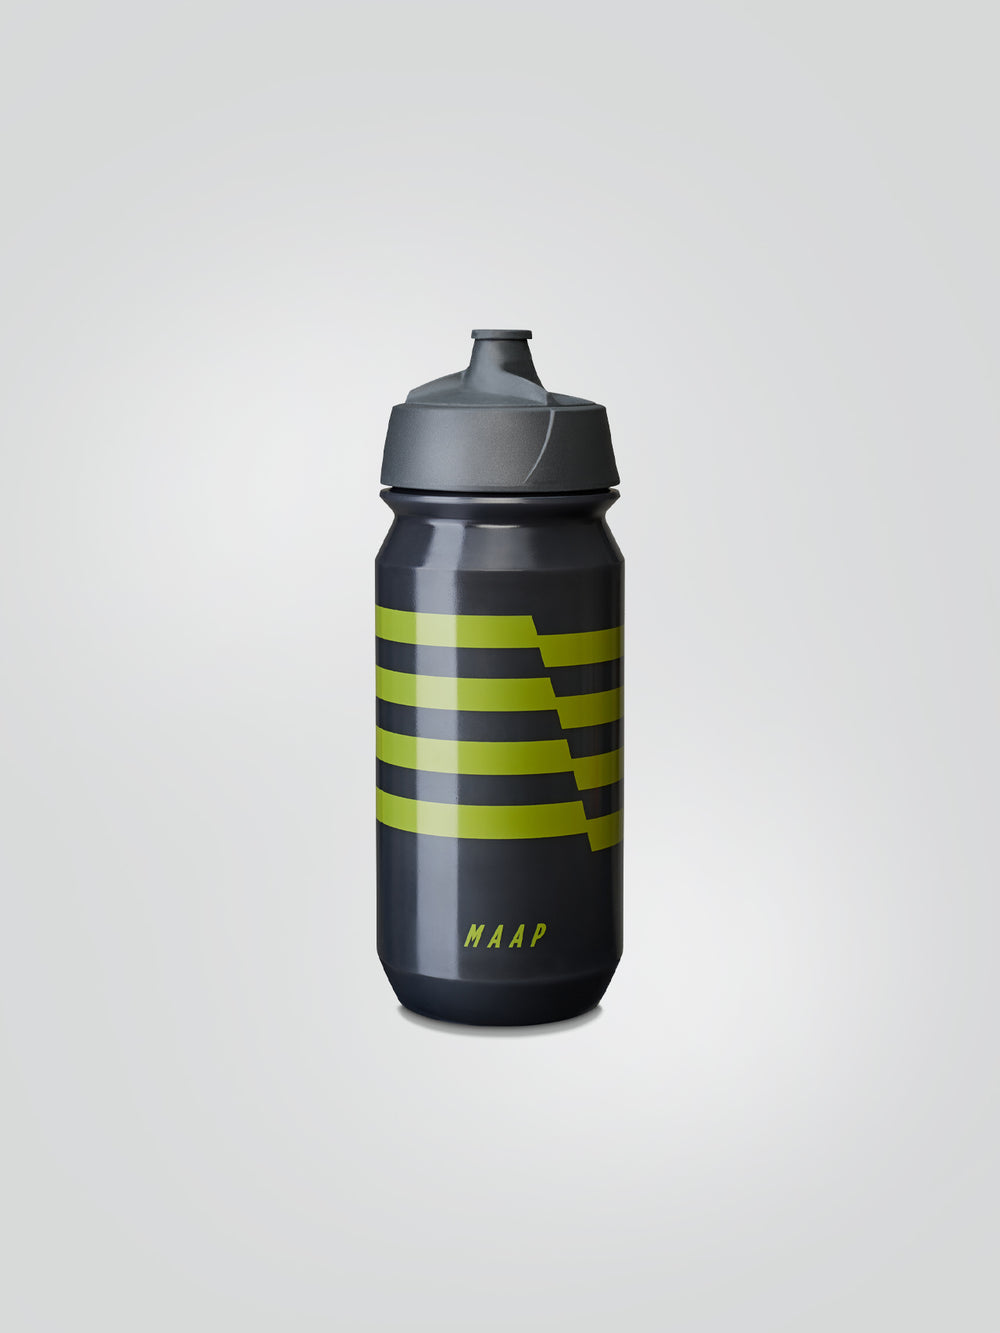 Product Image for Emblem Bottle